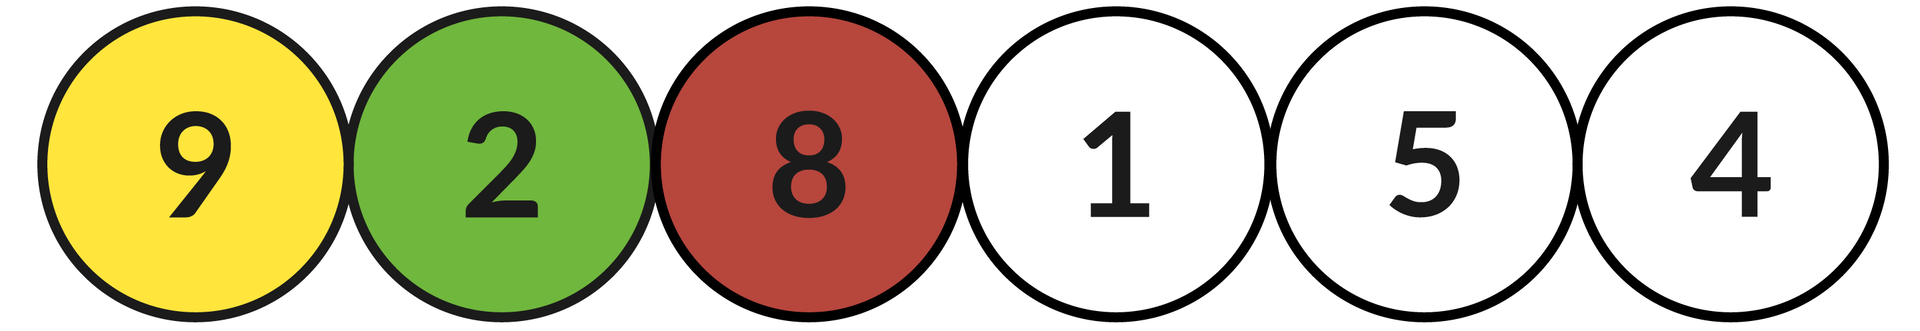 Ilustracja przedstawia sześć okręgów z liczbami: 9, 8, 2, 1, 5, 4.  Zielonym kolorem zaznaczono okrąg z liczbą: 2, a kolorem żółtym z liczbą: 9.Czerwonym kolorem oznaczono okrąg z liczbą 8.